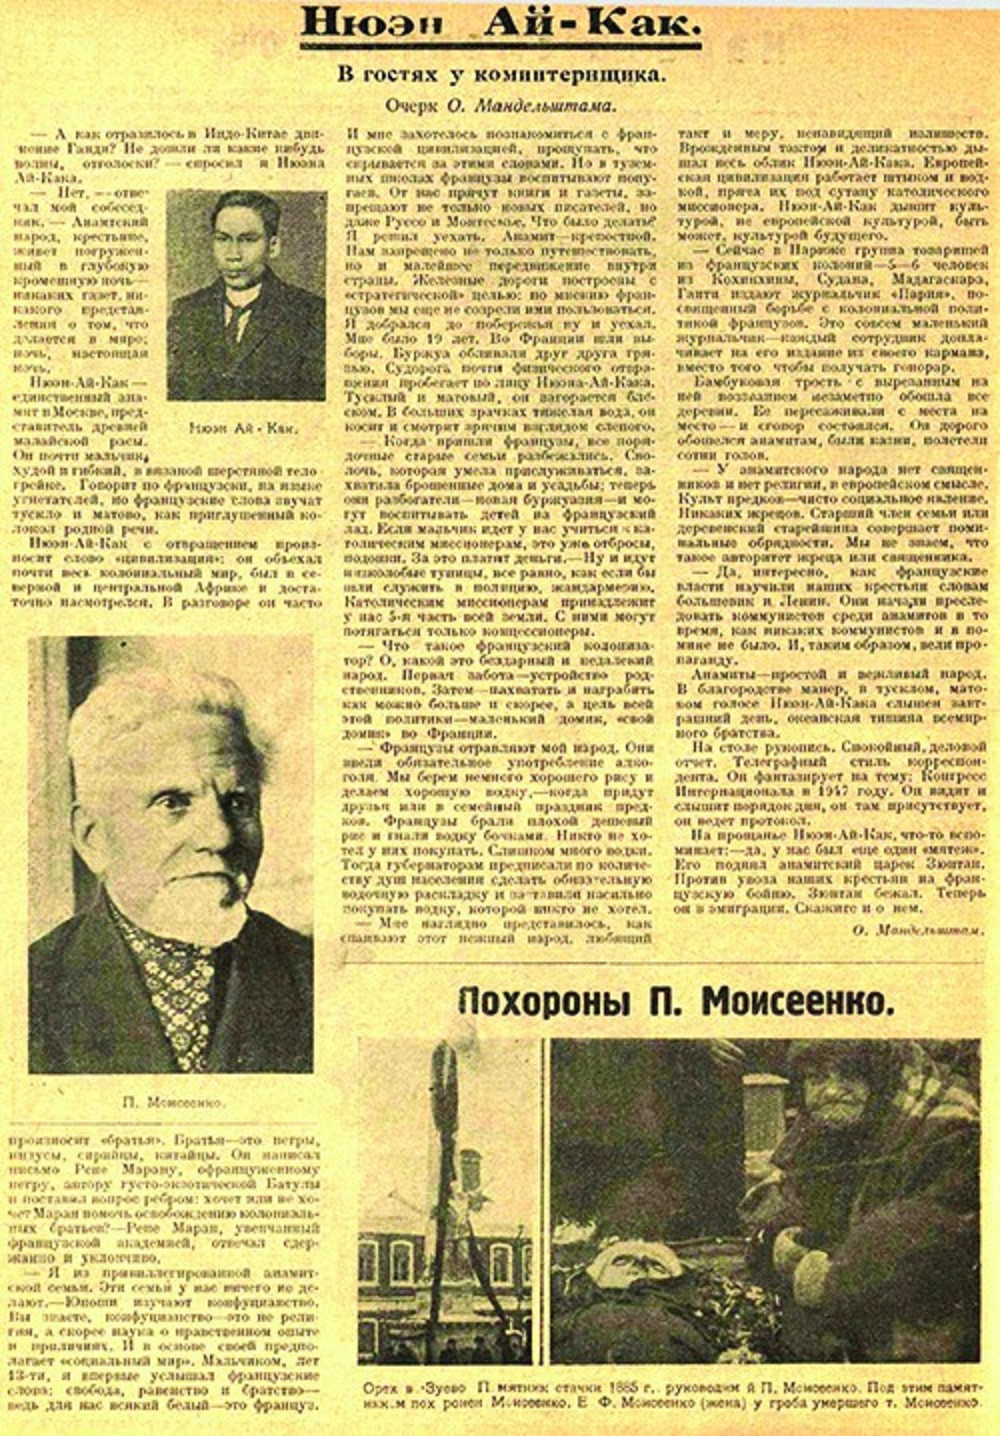 Bài báo “Thăm một chiến sĩ Quốc tế Cộng sản - Nguyễn Ái Quốc” đăng trên tạp chí “Ngọn lửa nhỏ” số 39 ra ngày 23-12-1923. Ảnh: Tư liệu lịch sử